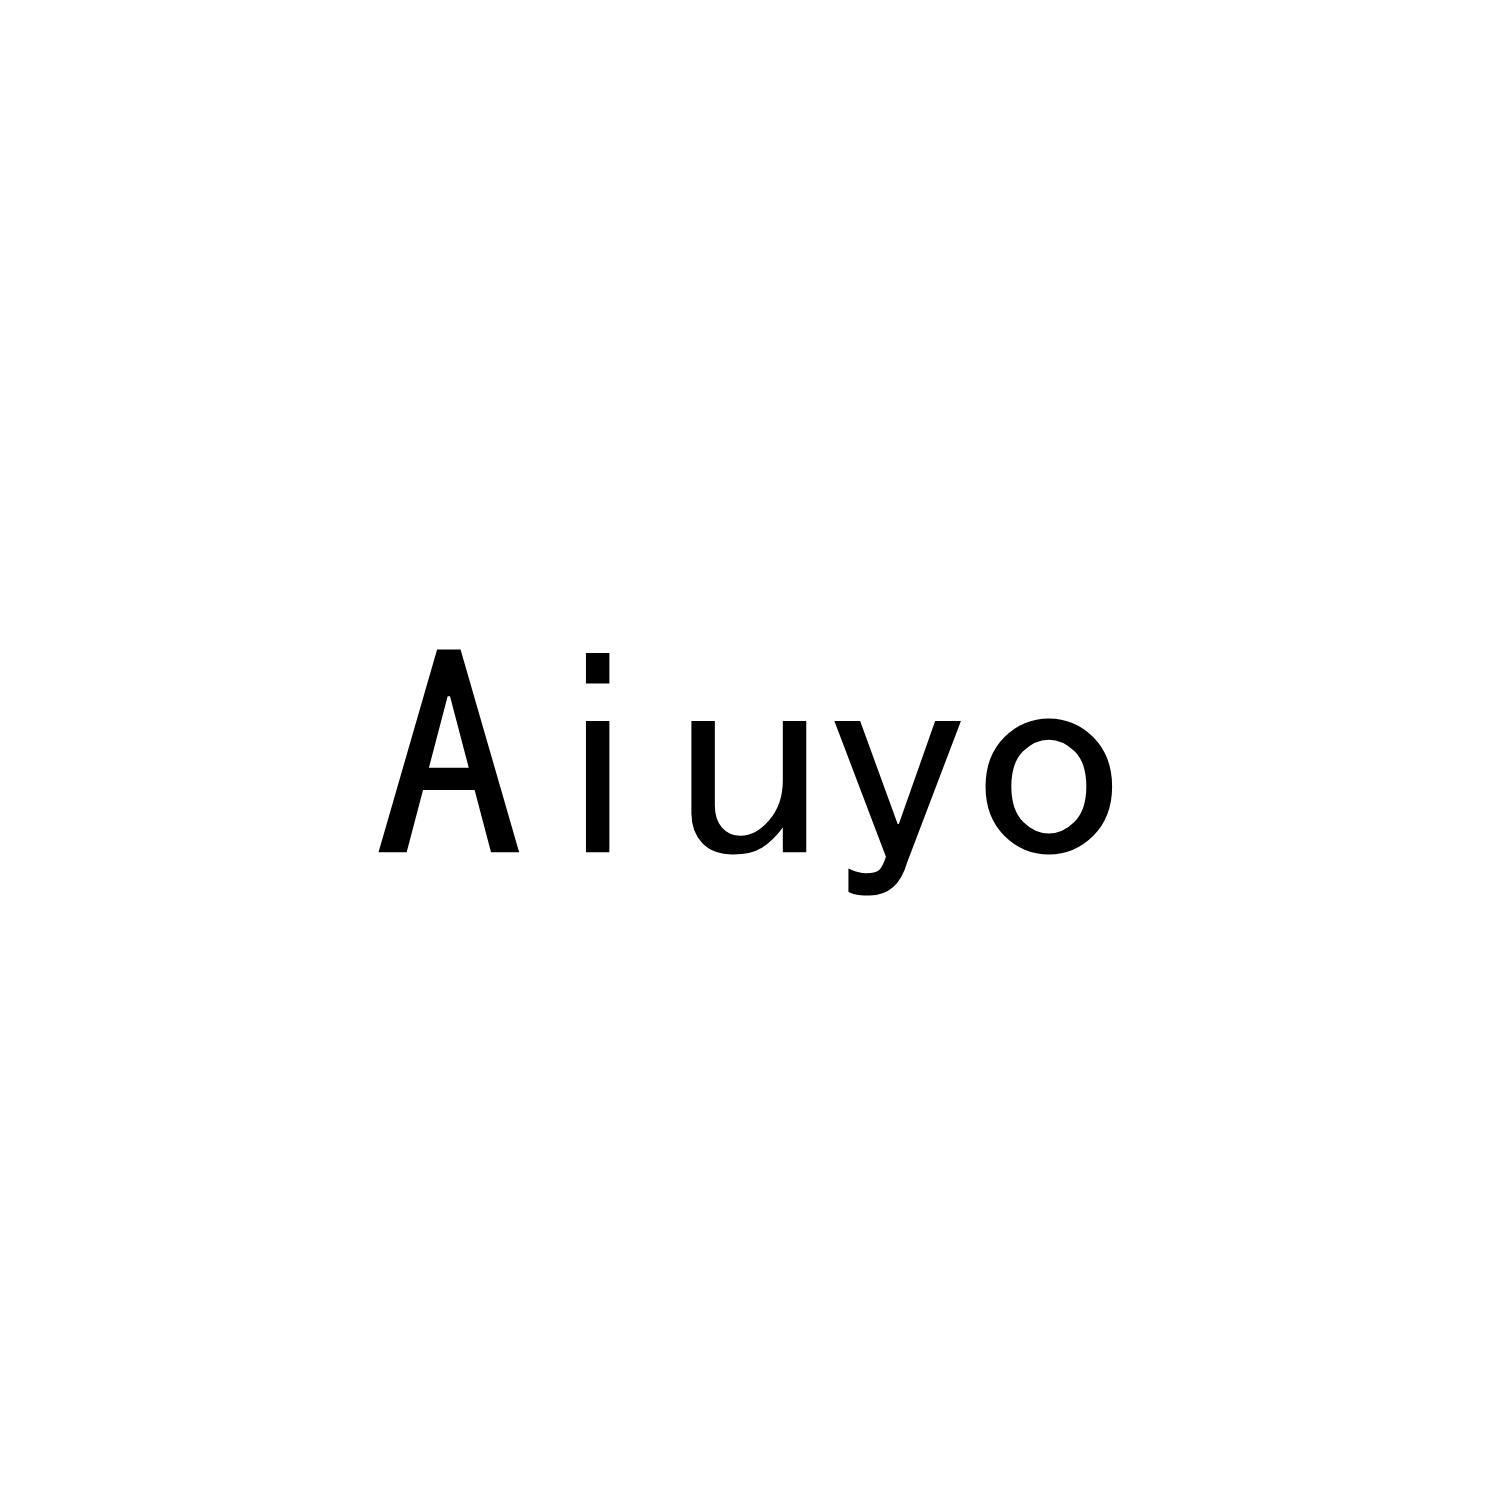 AIUYO